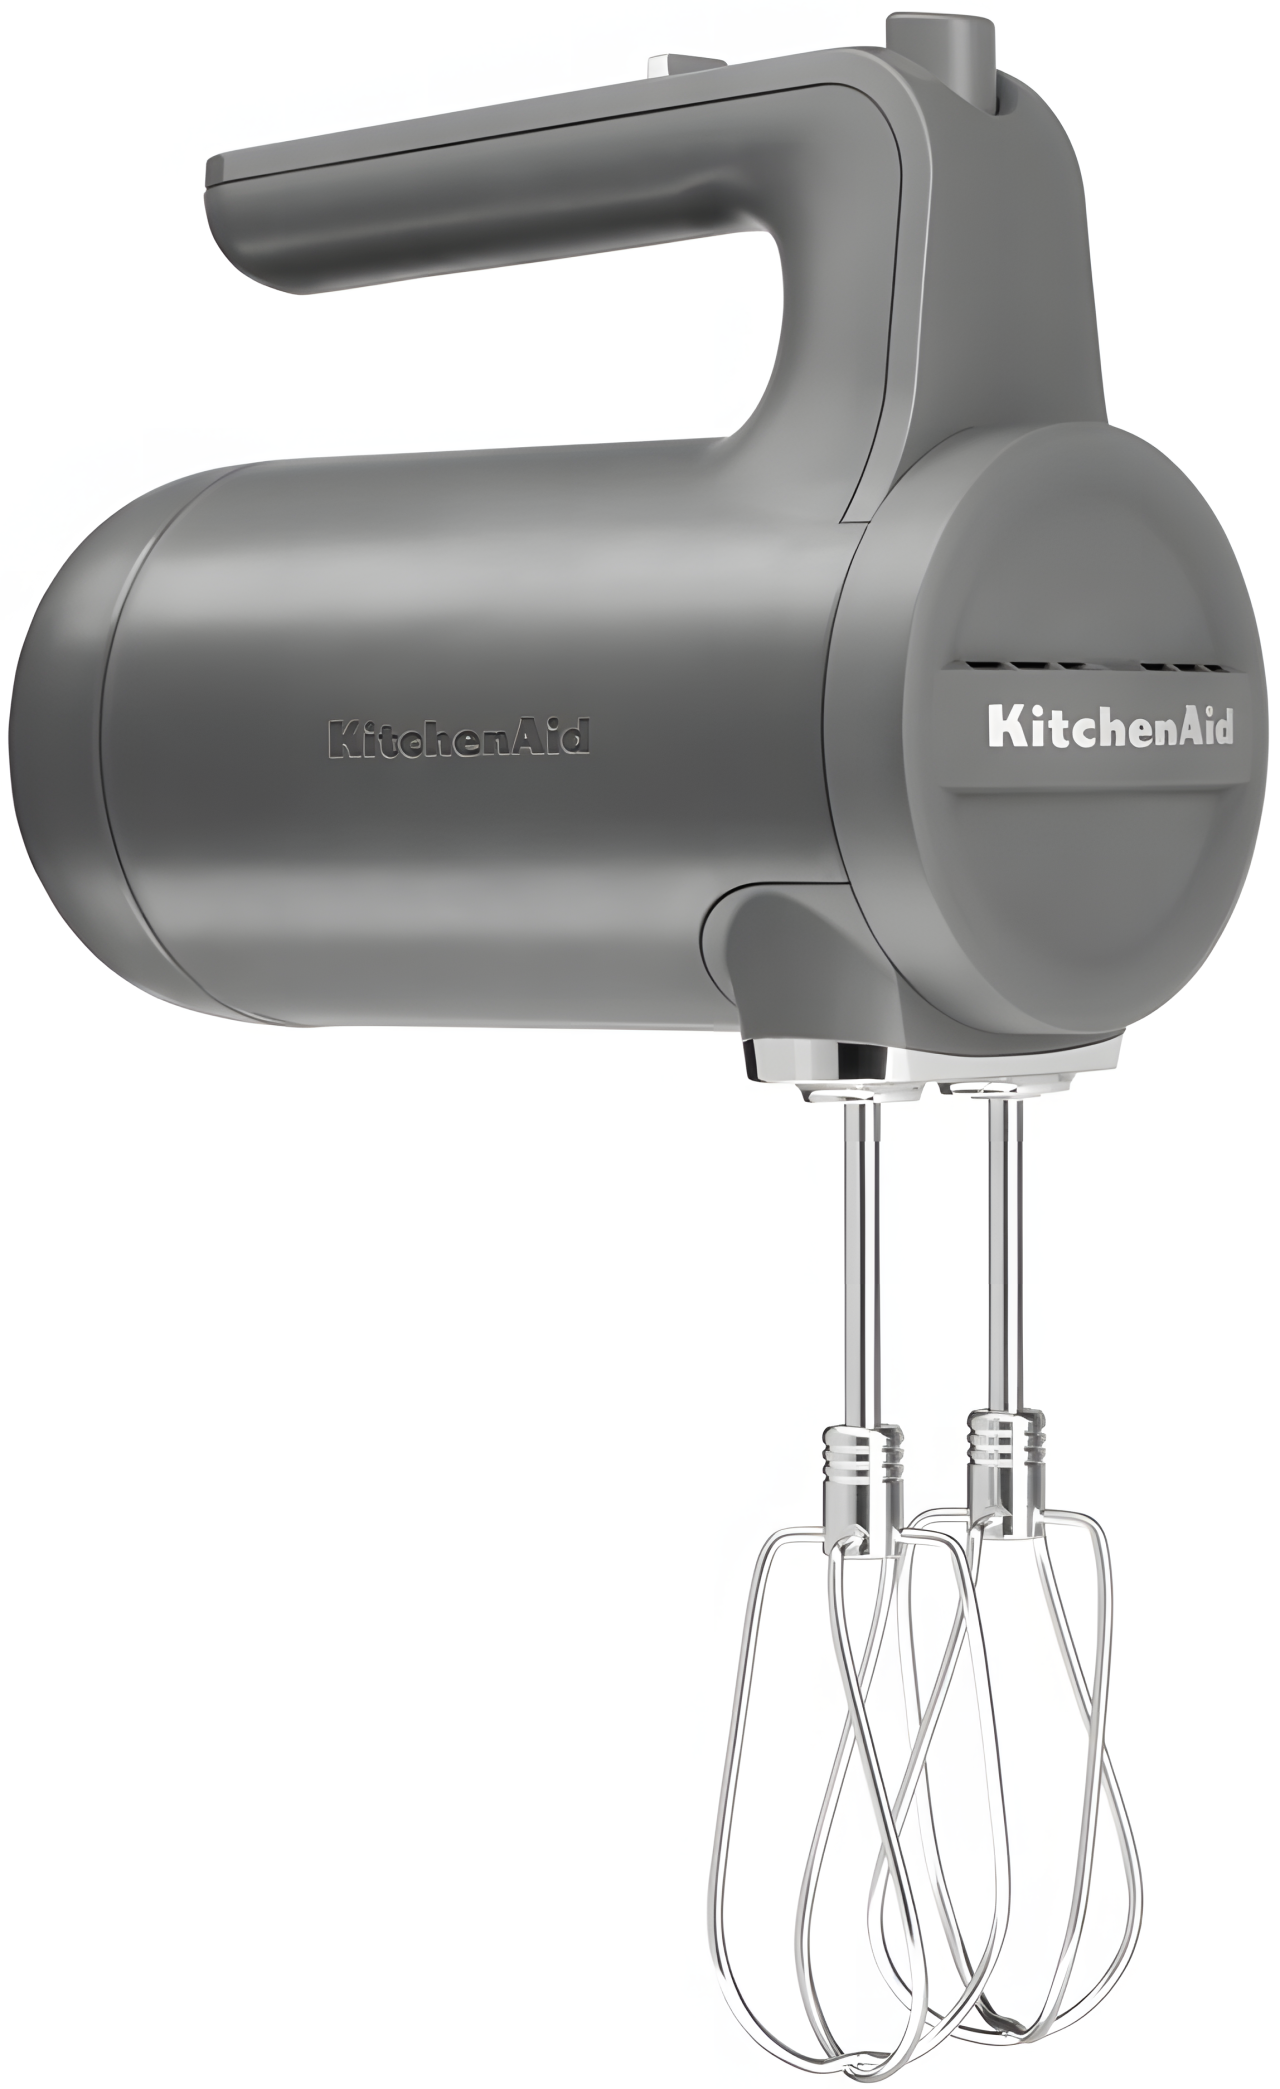 Міксер KitchenAid Cordless 5KHMB732EDG ручний бездротовий сірий